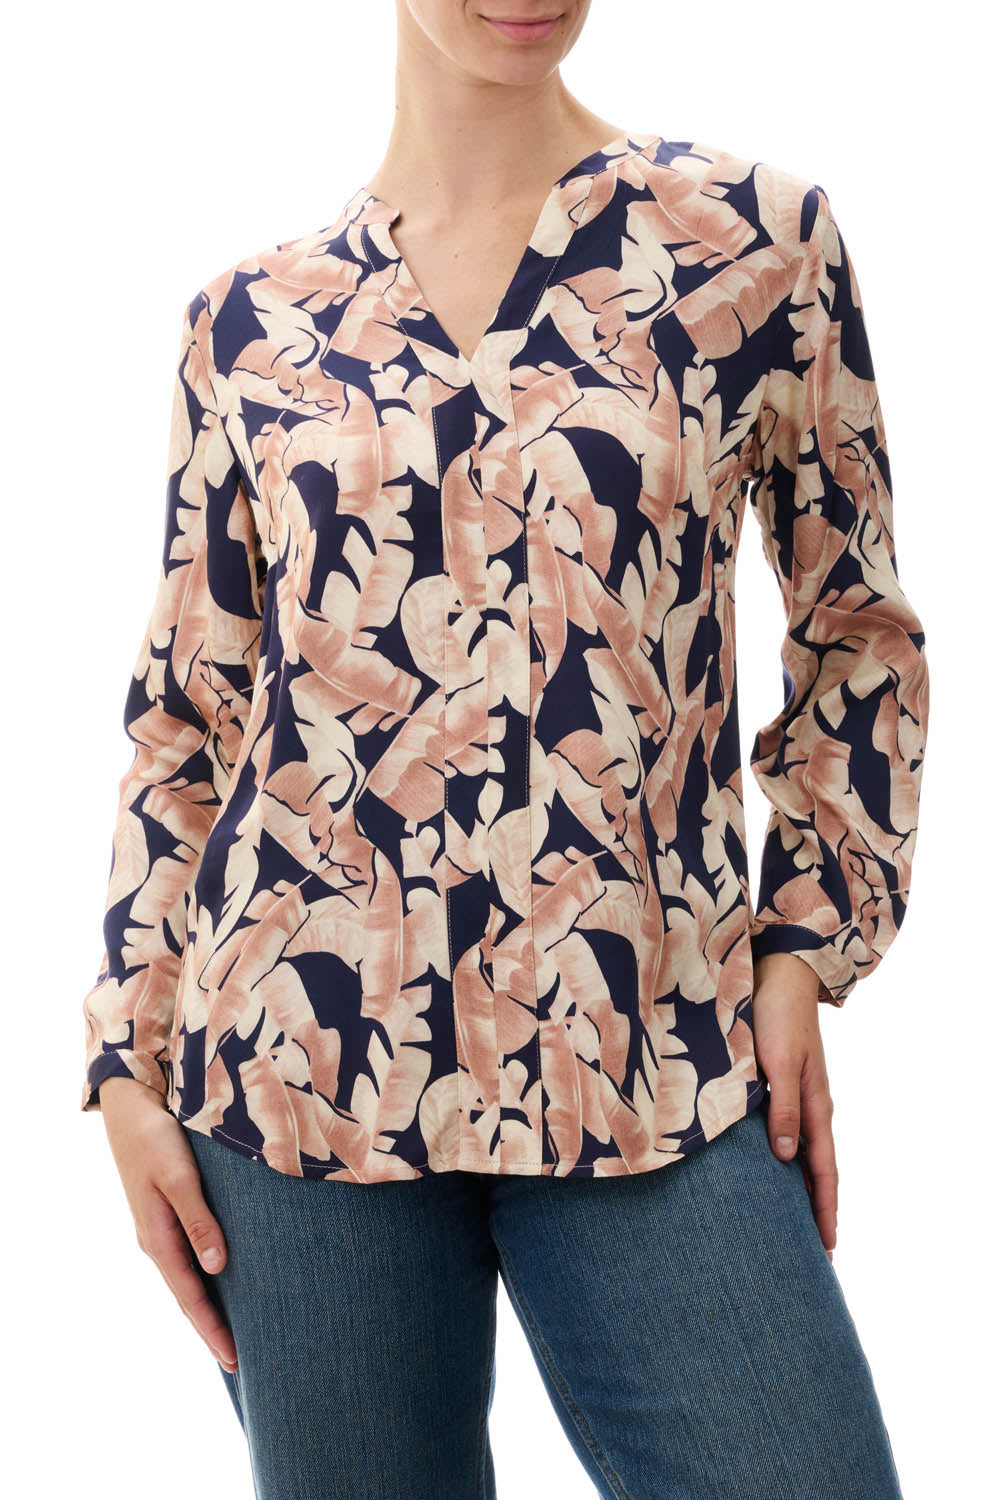 3MV40S - Summit pleat front blouse